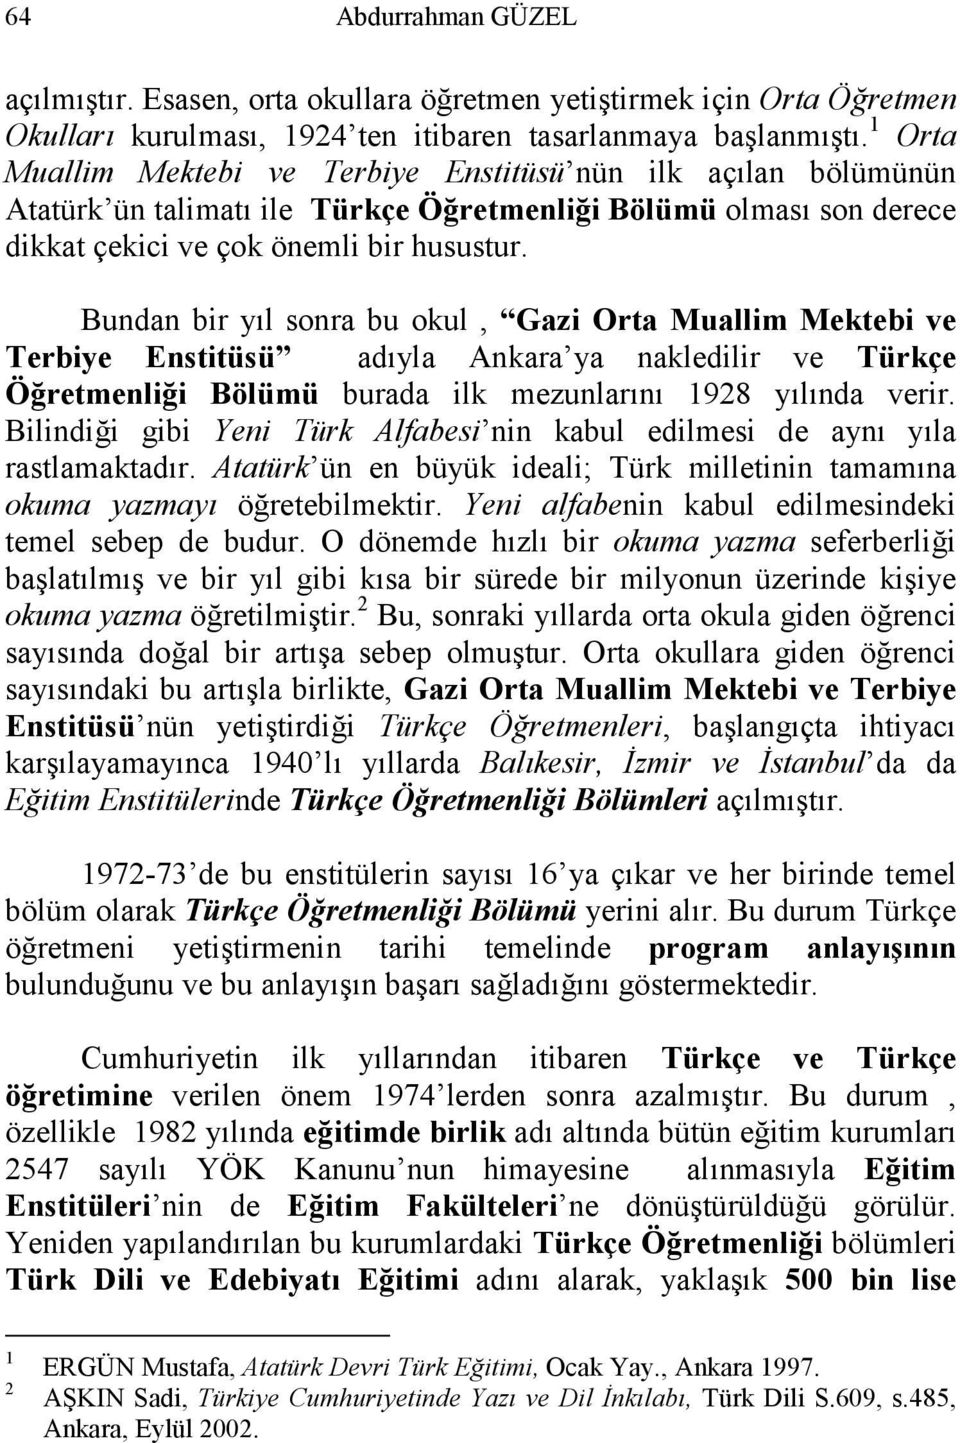 Bundan bir yıl sonra bu okul, Gazi Orta Muallim Mektebi ve Terbiye Enstitüsü adıyla Ankara ya nakledilir ve Türkçe Öğretmenliği Bölümü burada ilk mezunlarını 1928 yılında verir.